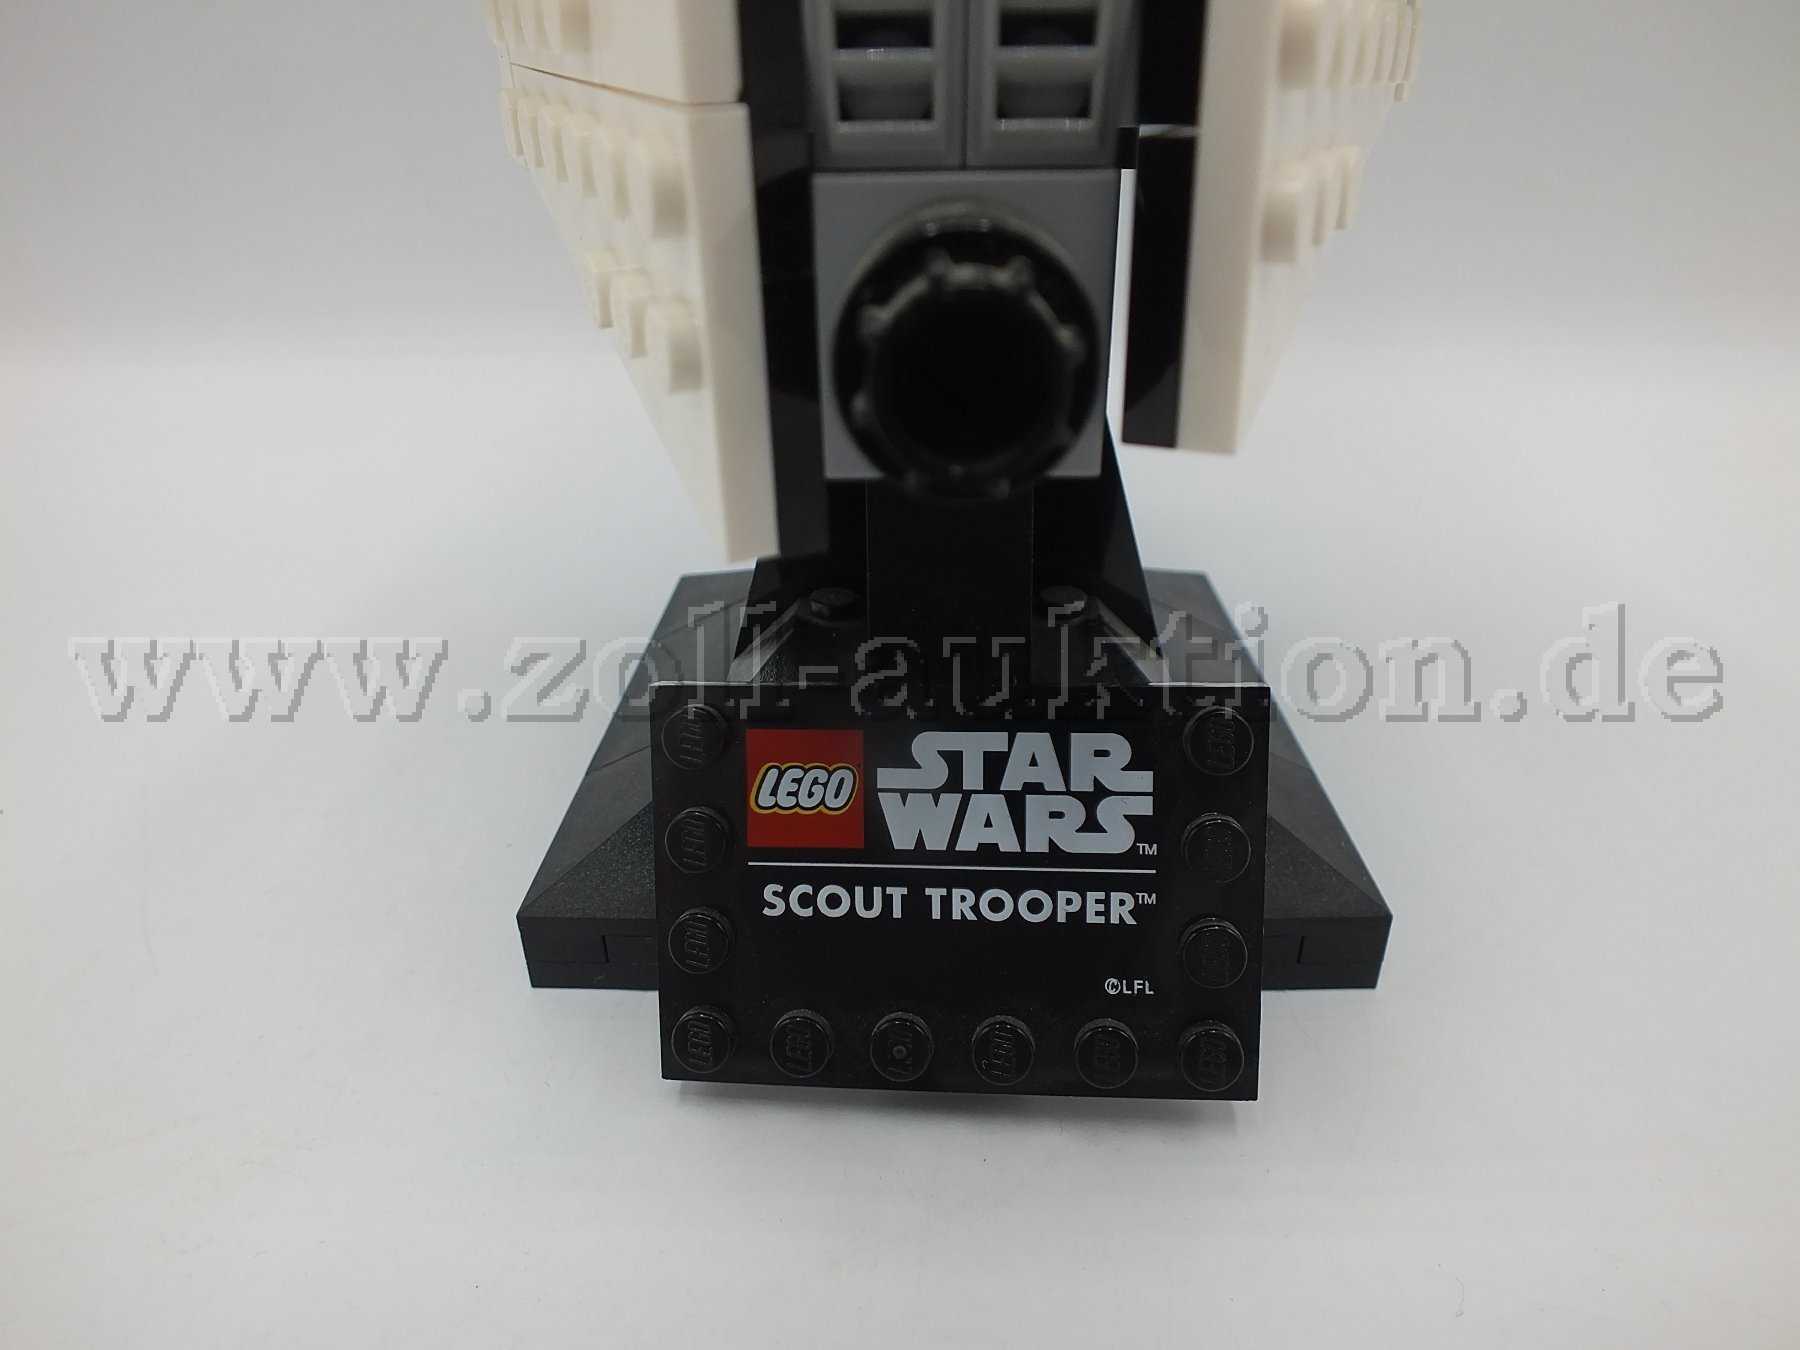 Beschreibung der LEGO Star Wars-Figur